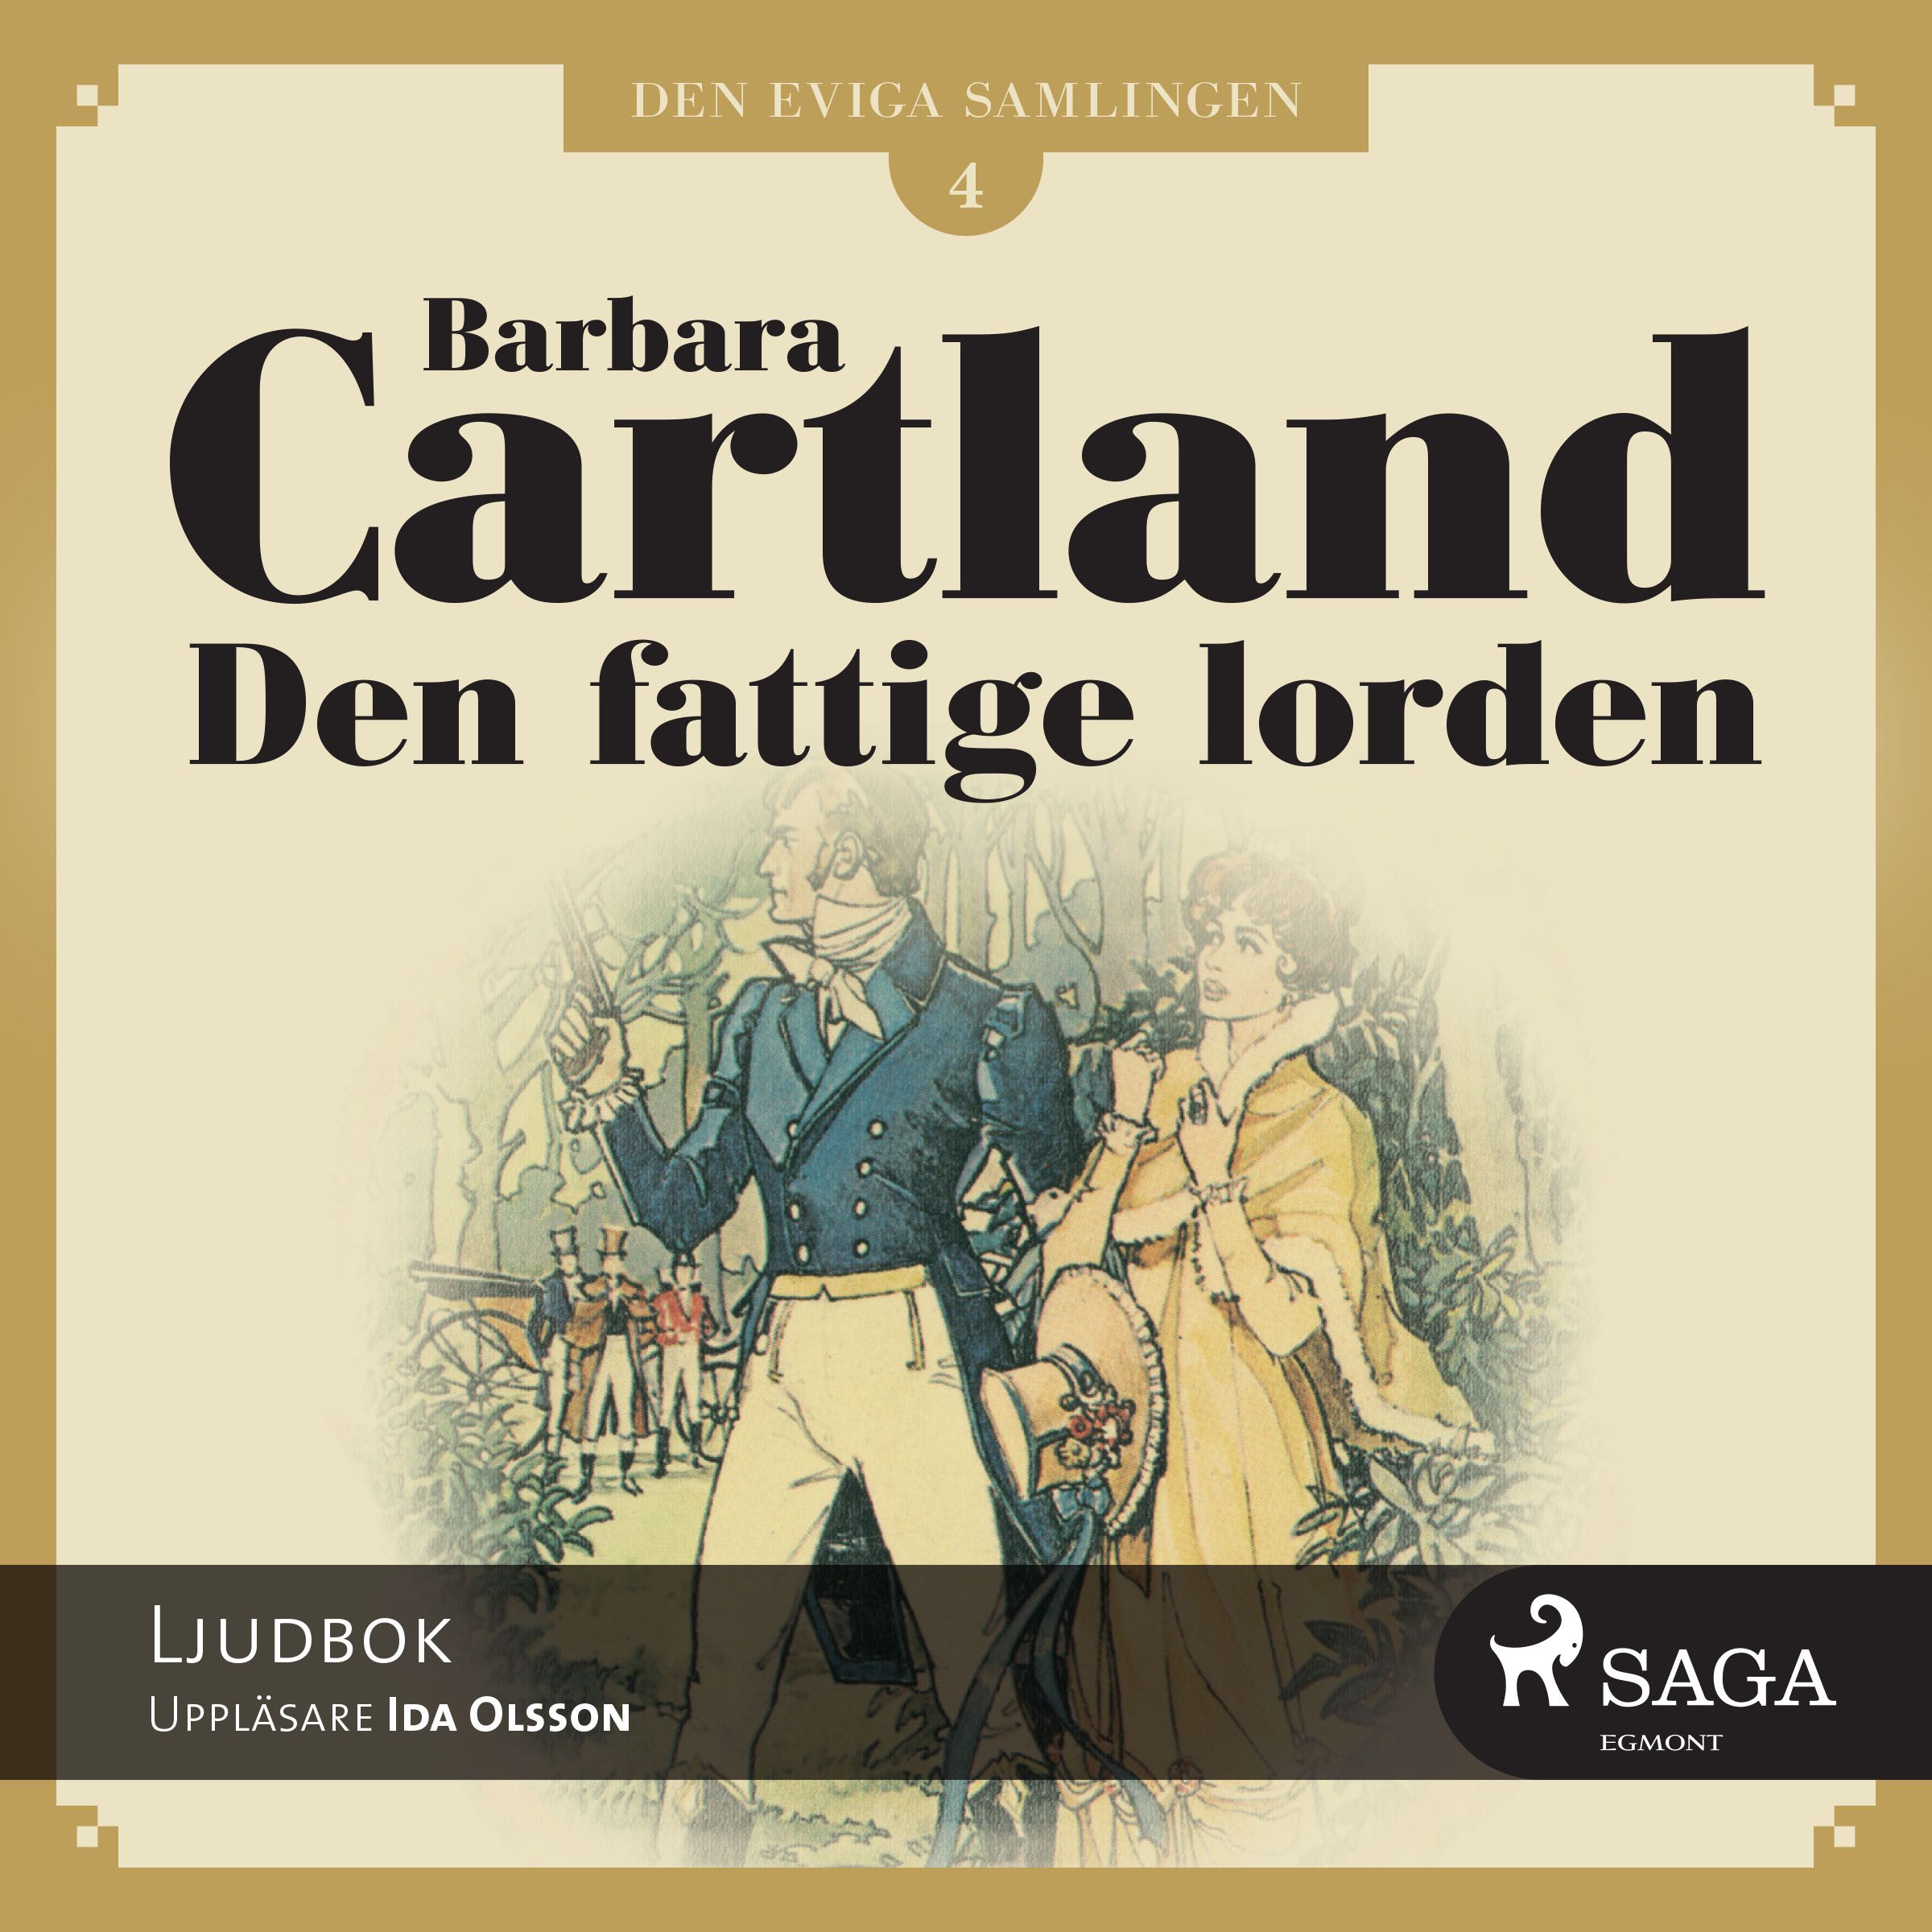 Den fattige lorden, ljudbok av Barbara Cartland